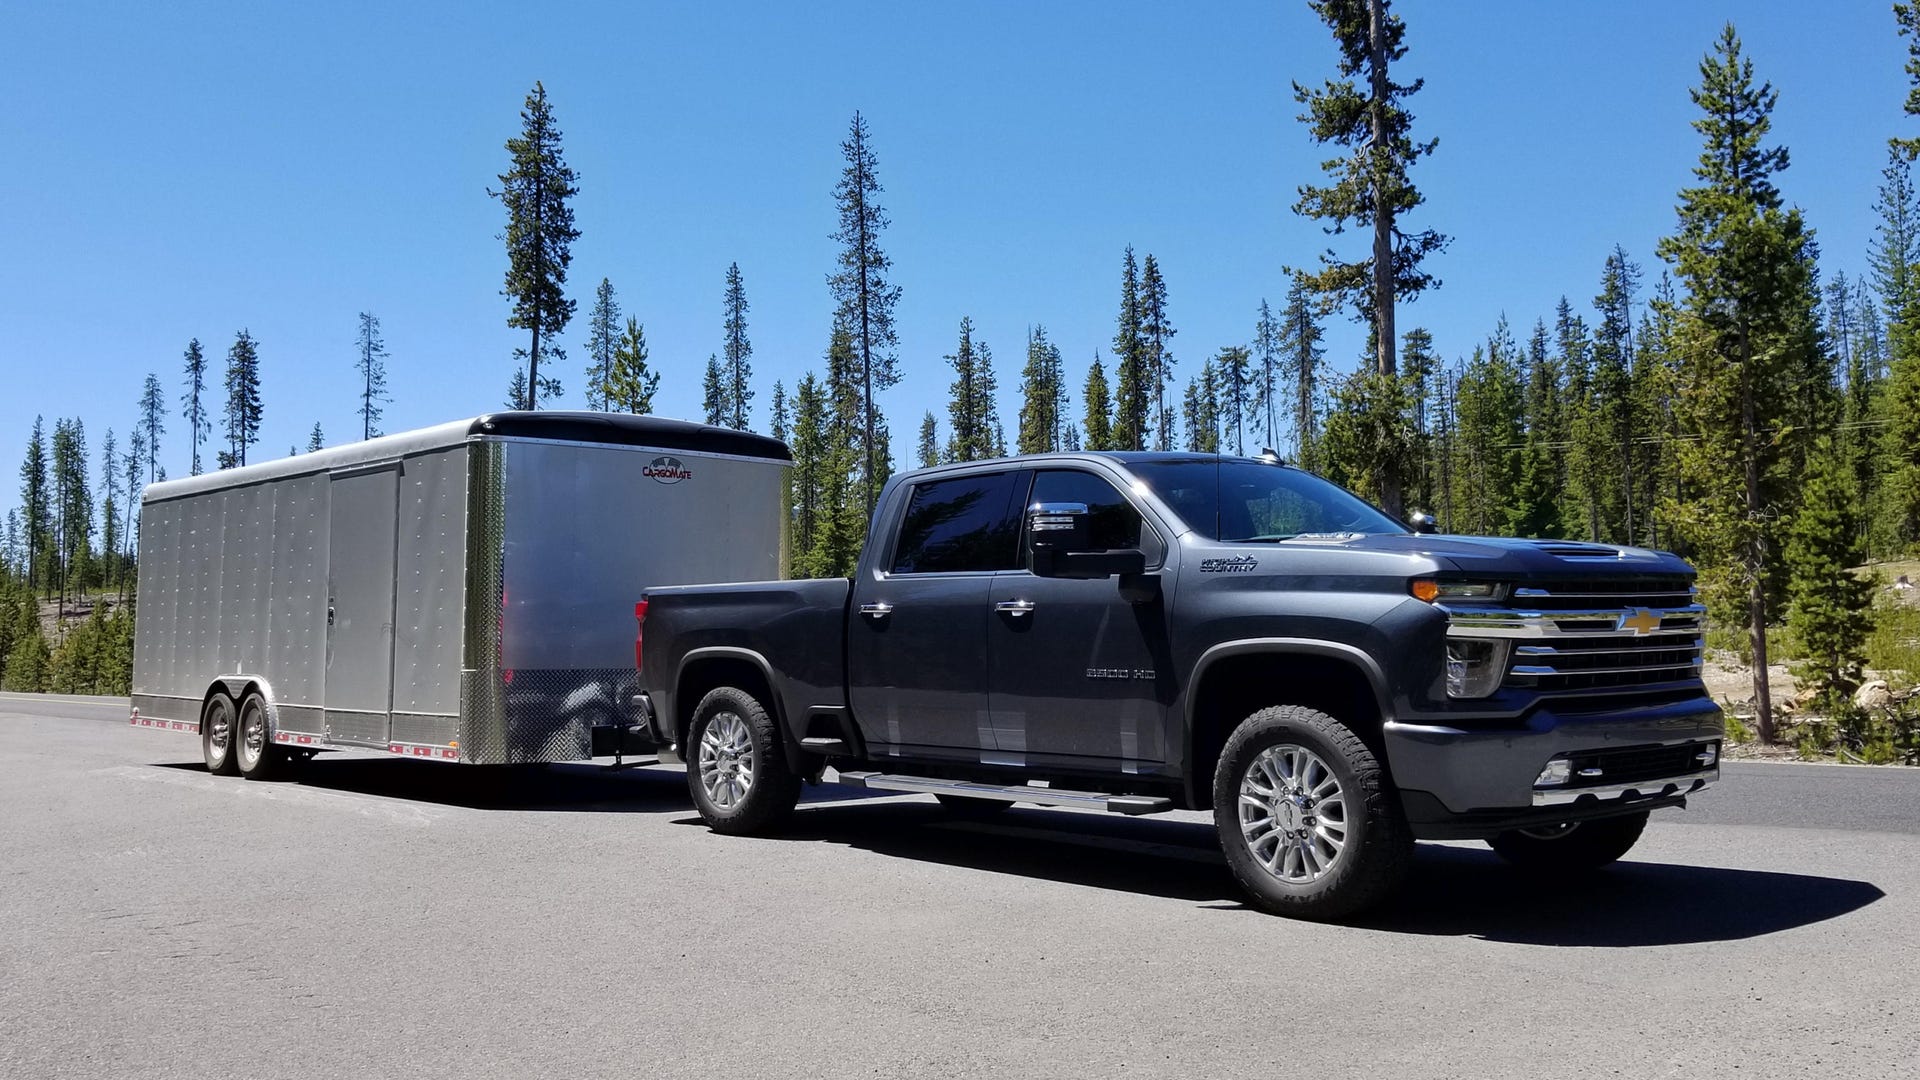 2020 Chevy Silverado 2500HD towing a trailer